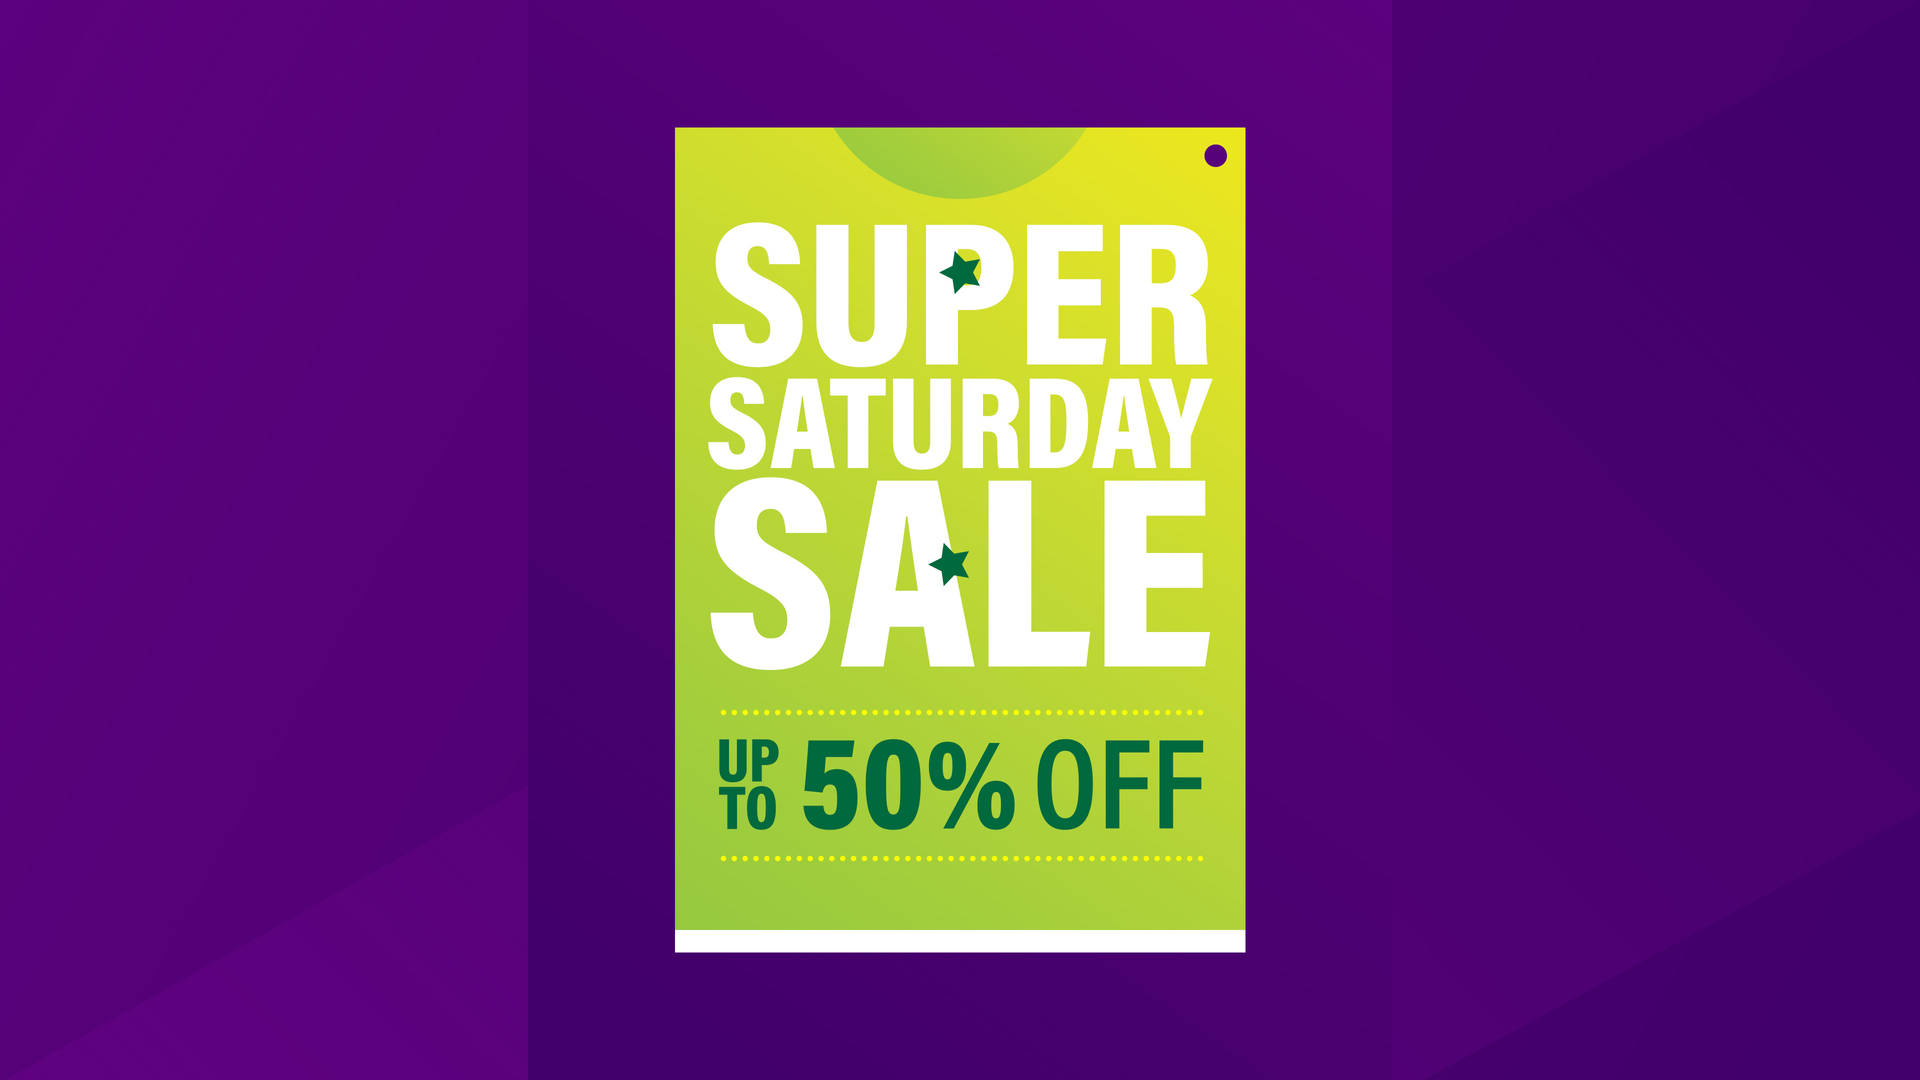 Exciting Super Saturday Sale